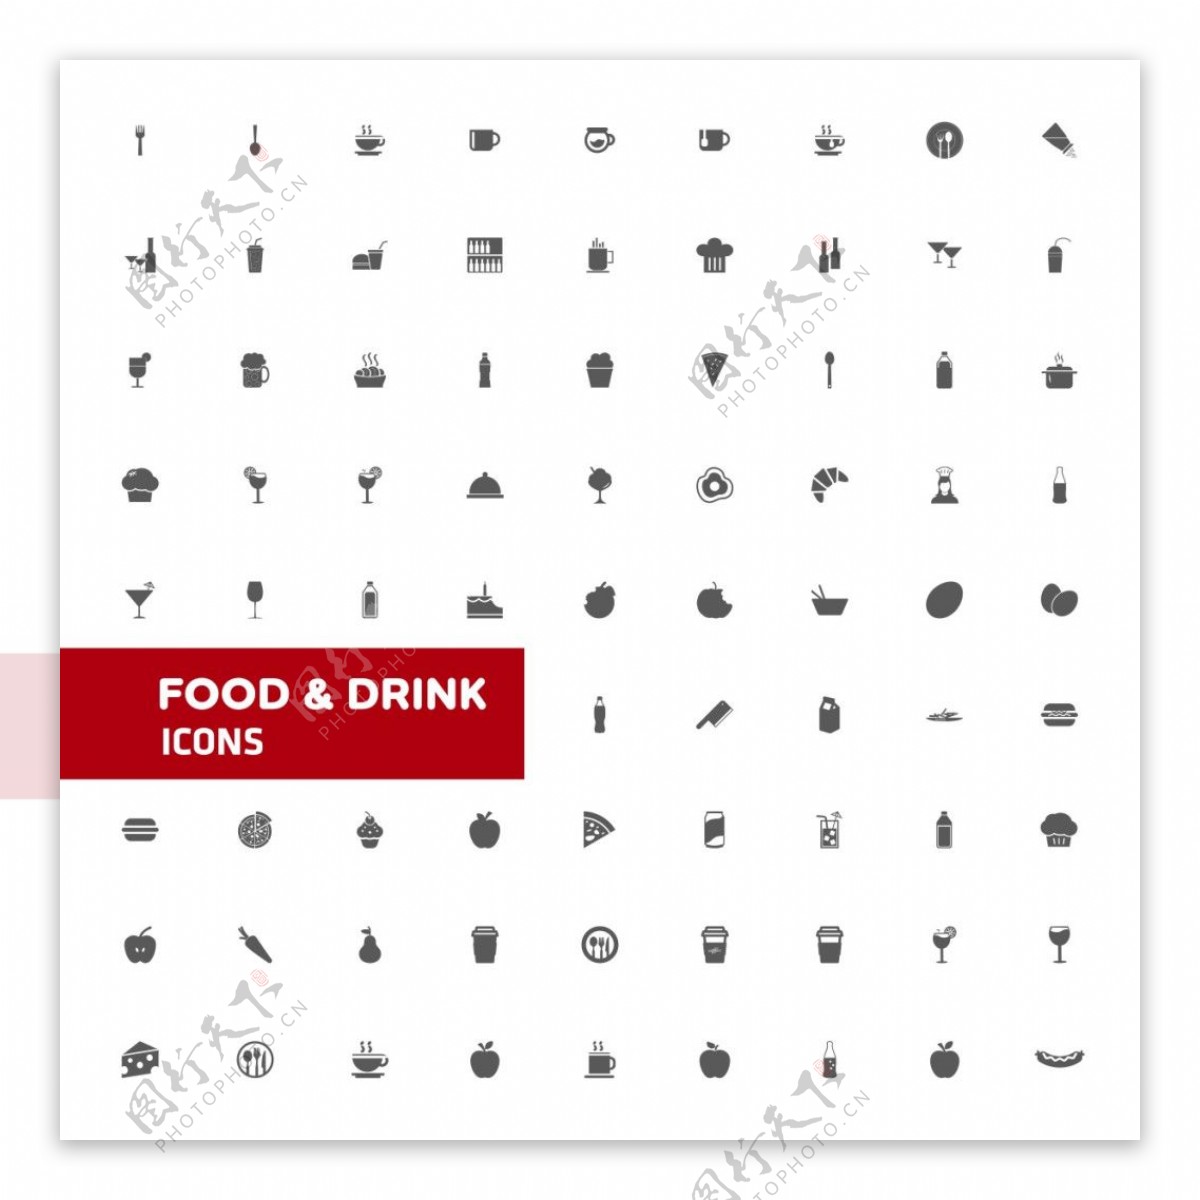 食物饮料图标素材